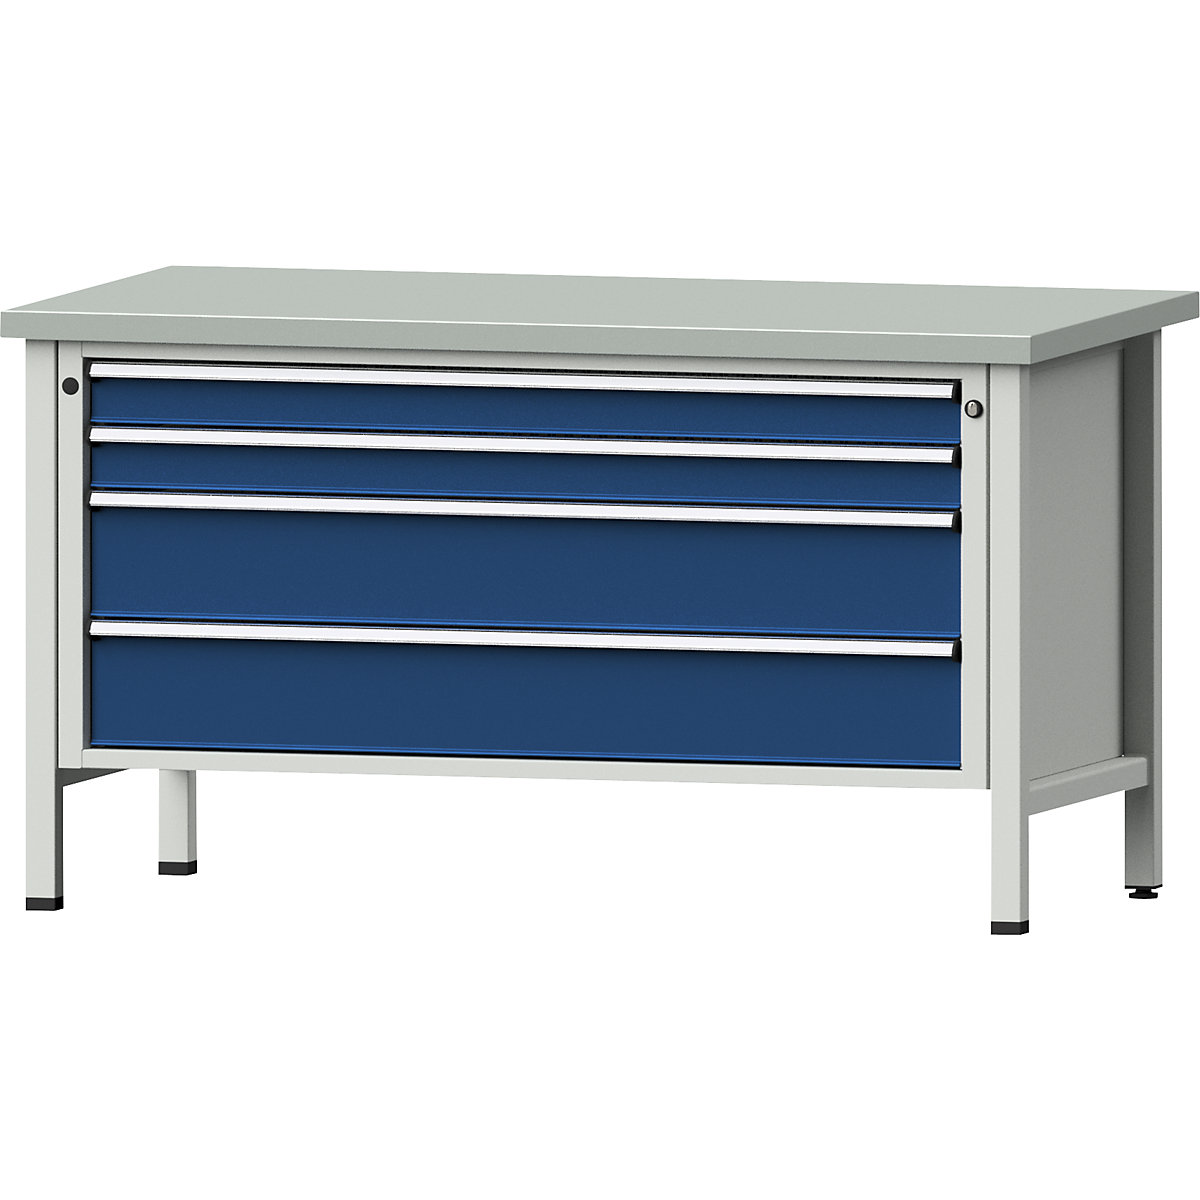 Établi avec tiroirs XL/XXL, sur piétement – ANKE, largeur 1500 mm, 4 tiroirs, plateau à revêtement en tôle d'acier, façade bleu gentiane-11